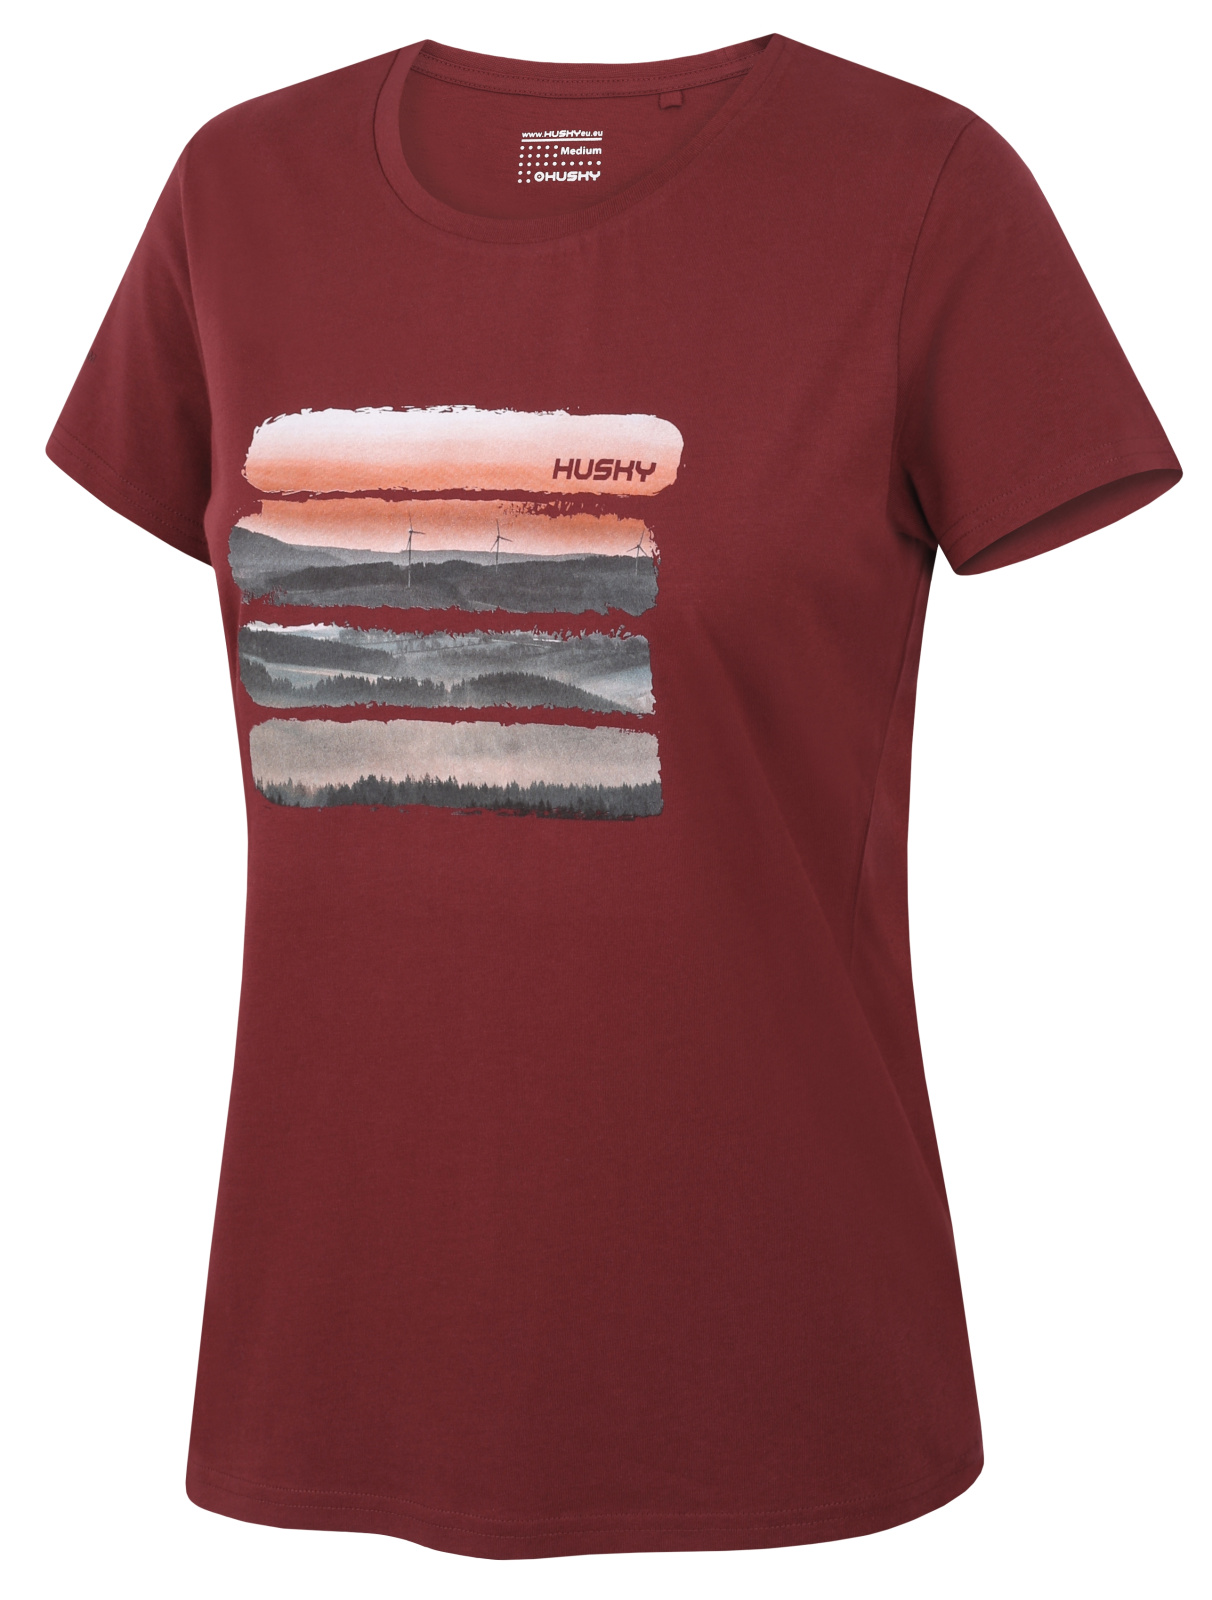 Husky Dámské bavlněné triko Tee Vane L bordo Velikost: S dámské tričko s krátkým rukávem